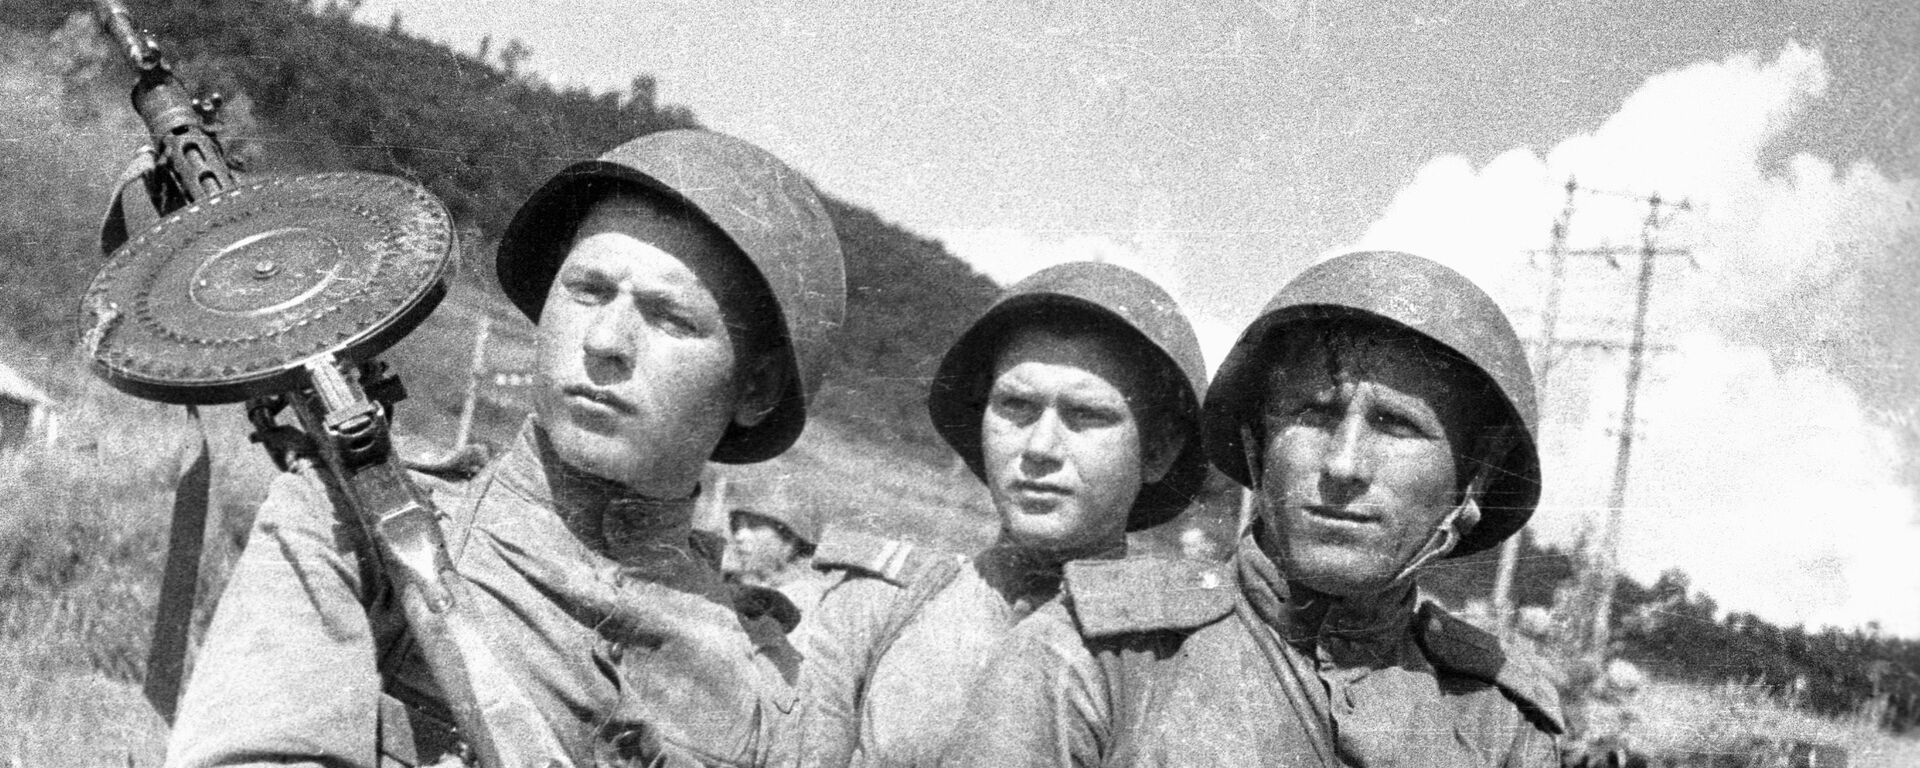 Algunos de los soldados soviéticos que sobresalieron en el campo de batalla - Sputnik Mundo, 1920, 02.09.2020